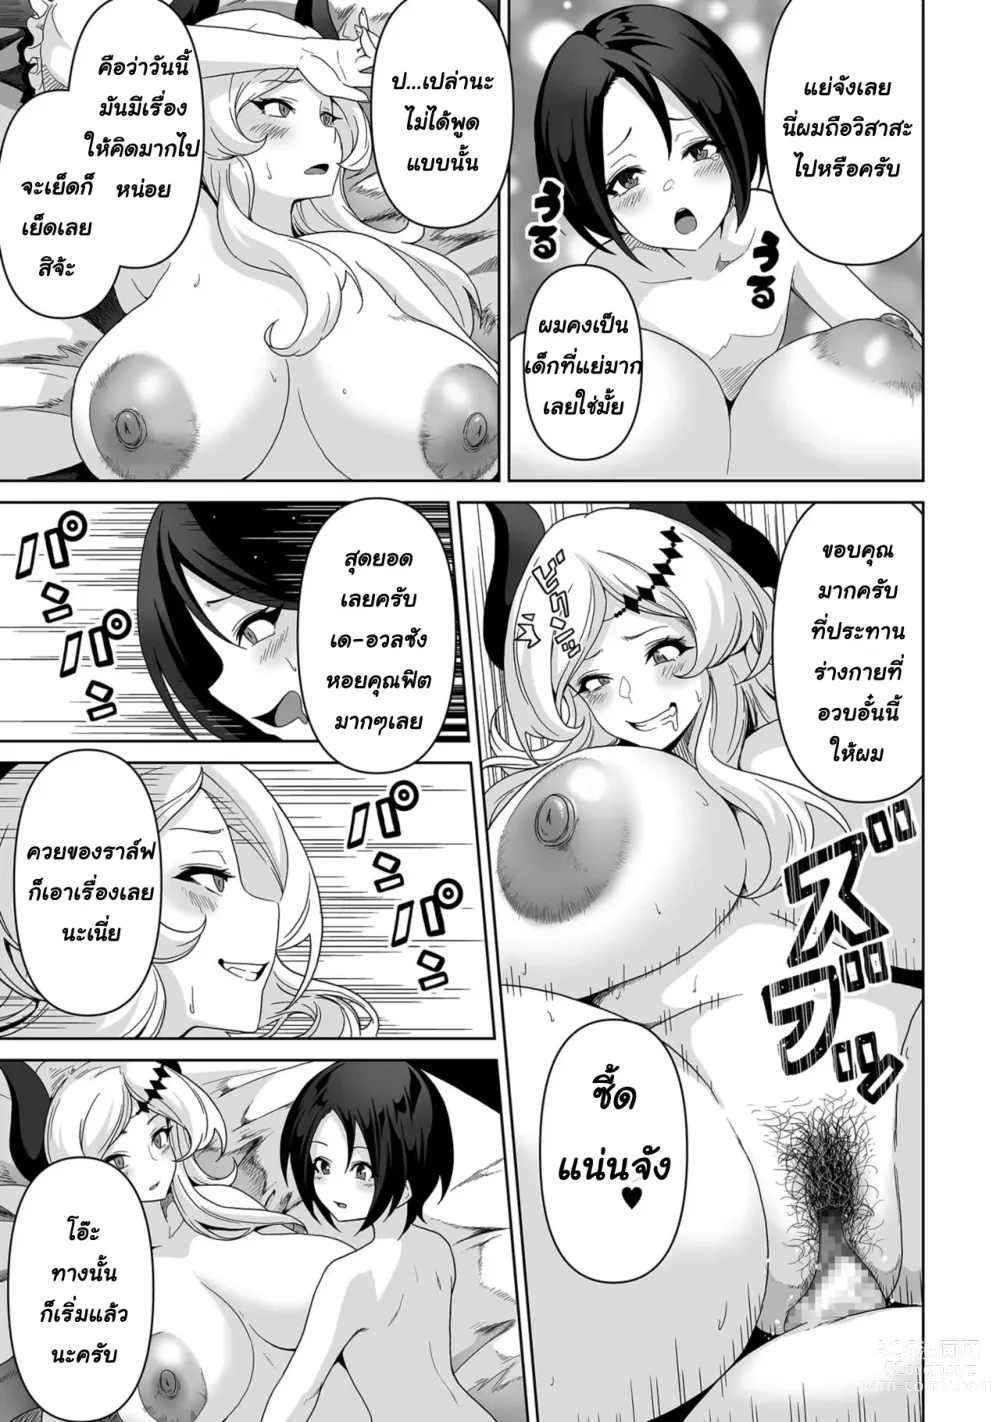 Page 16 of manga Sakyubasu kingudamu dai isekai kara kita shounen 2